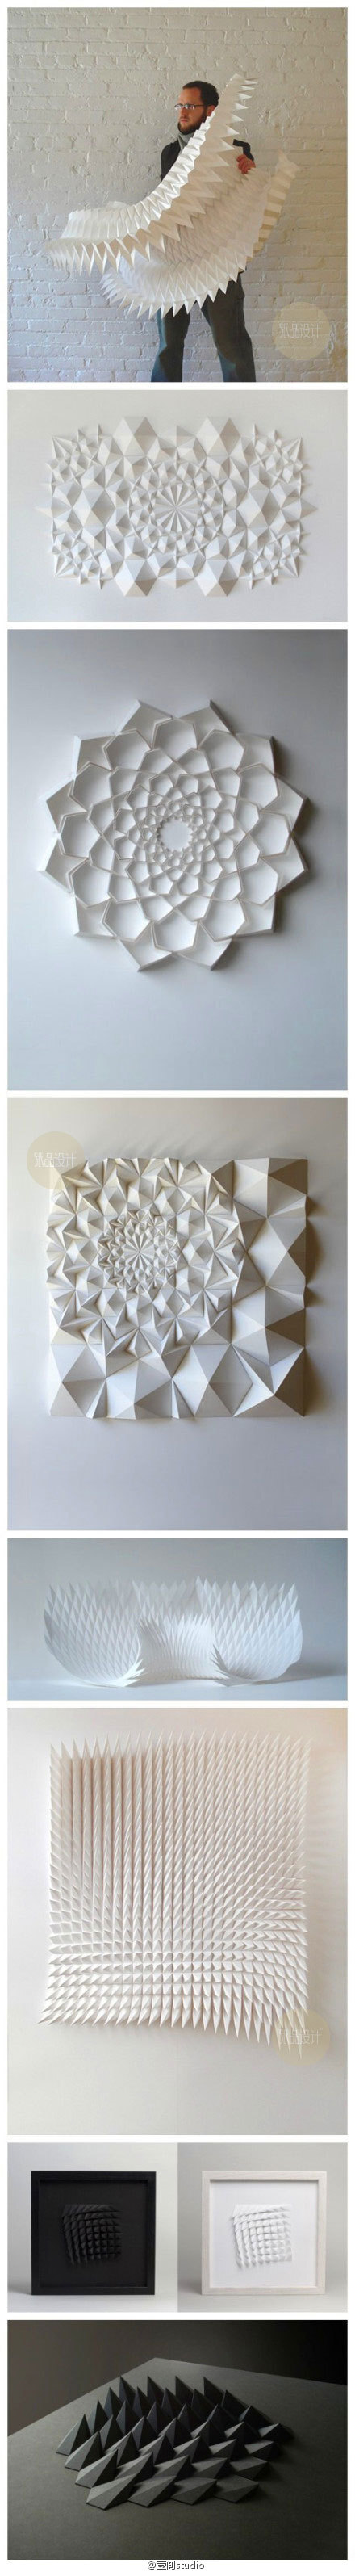 精密的折纸艺术】matthew shlian是一位纸张工程师,平日从事印刷媒材